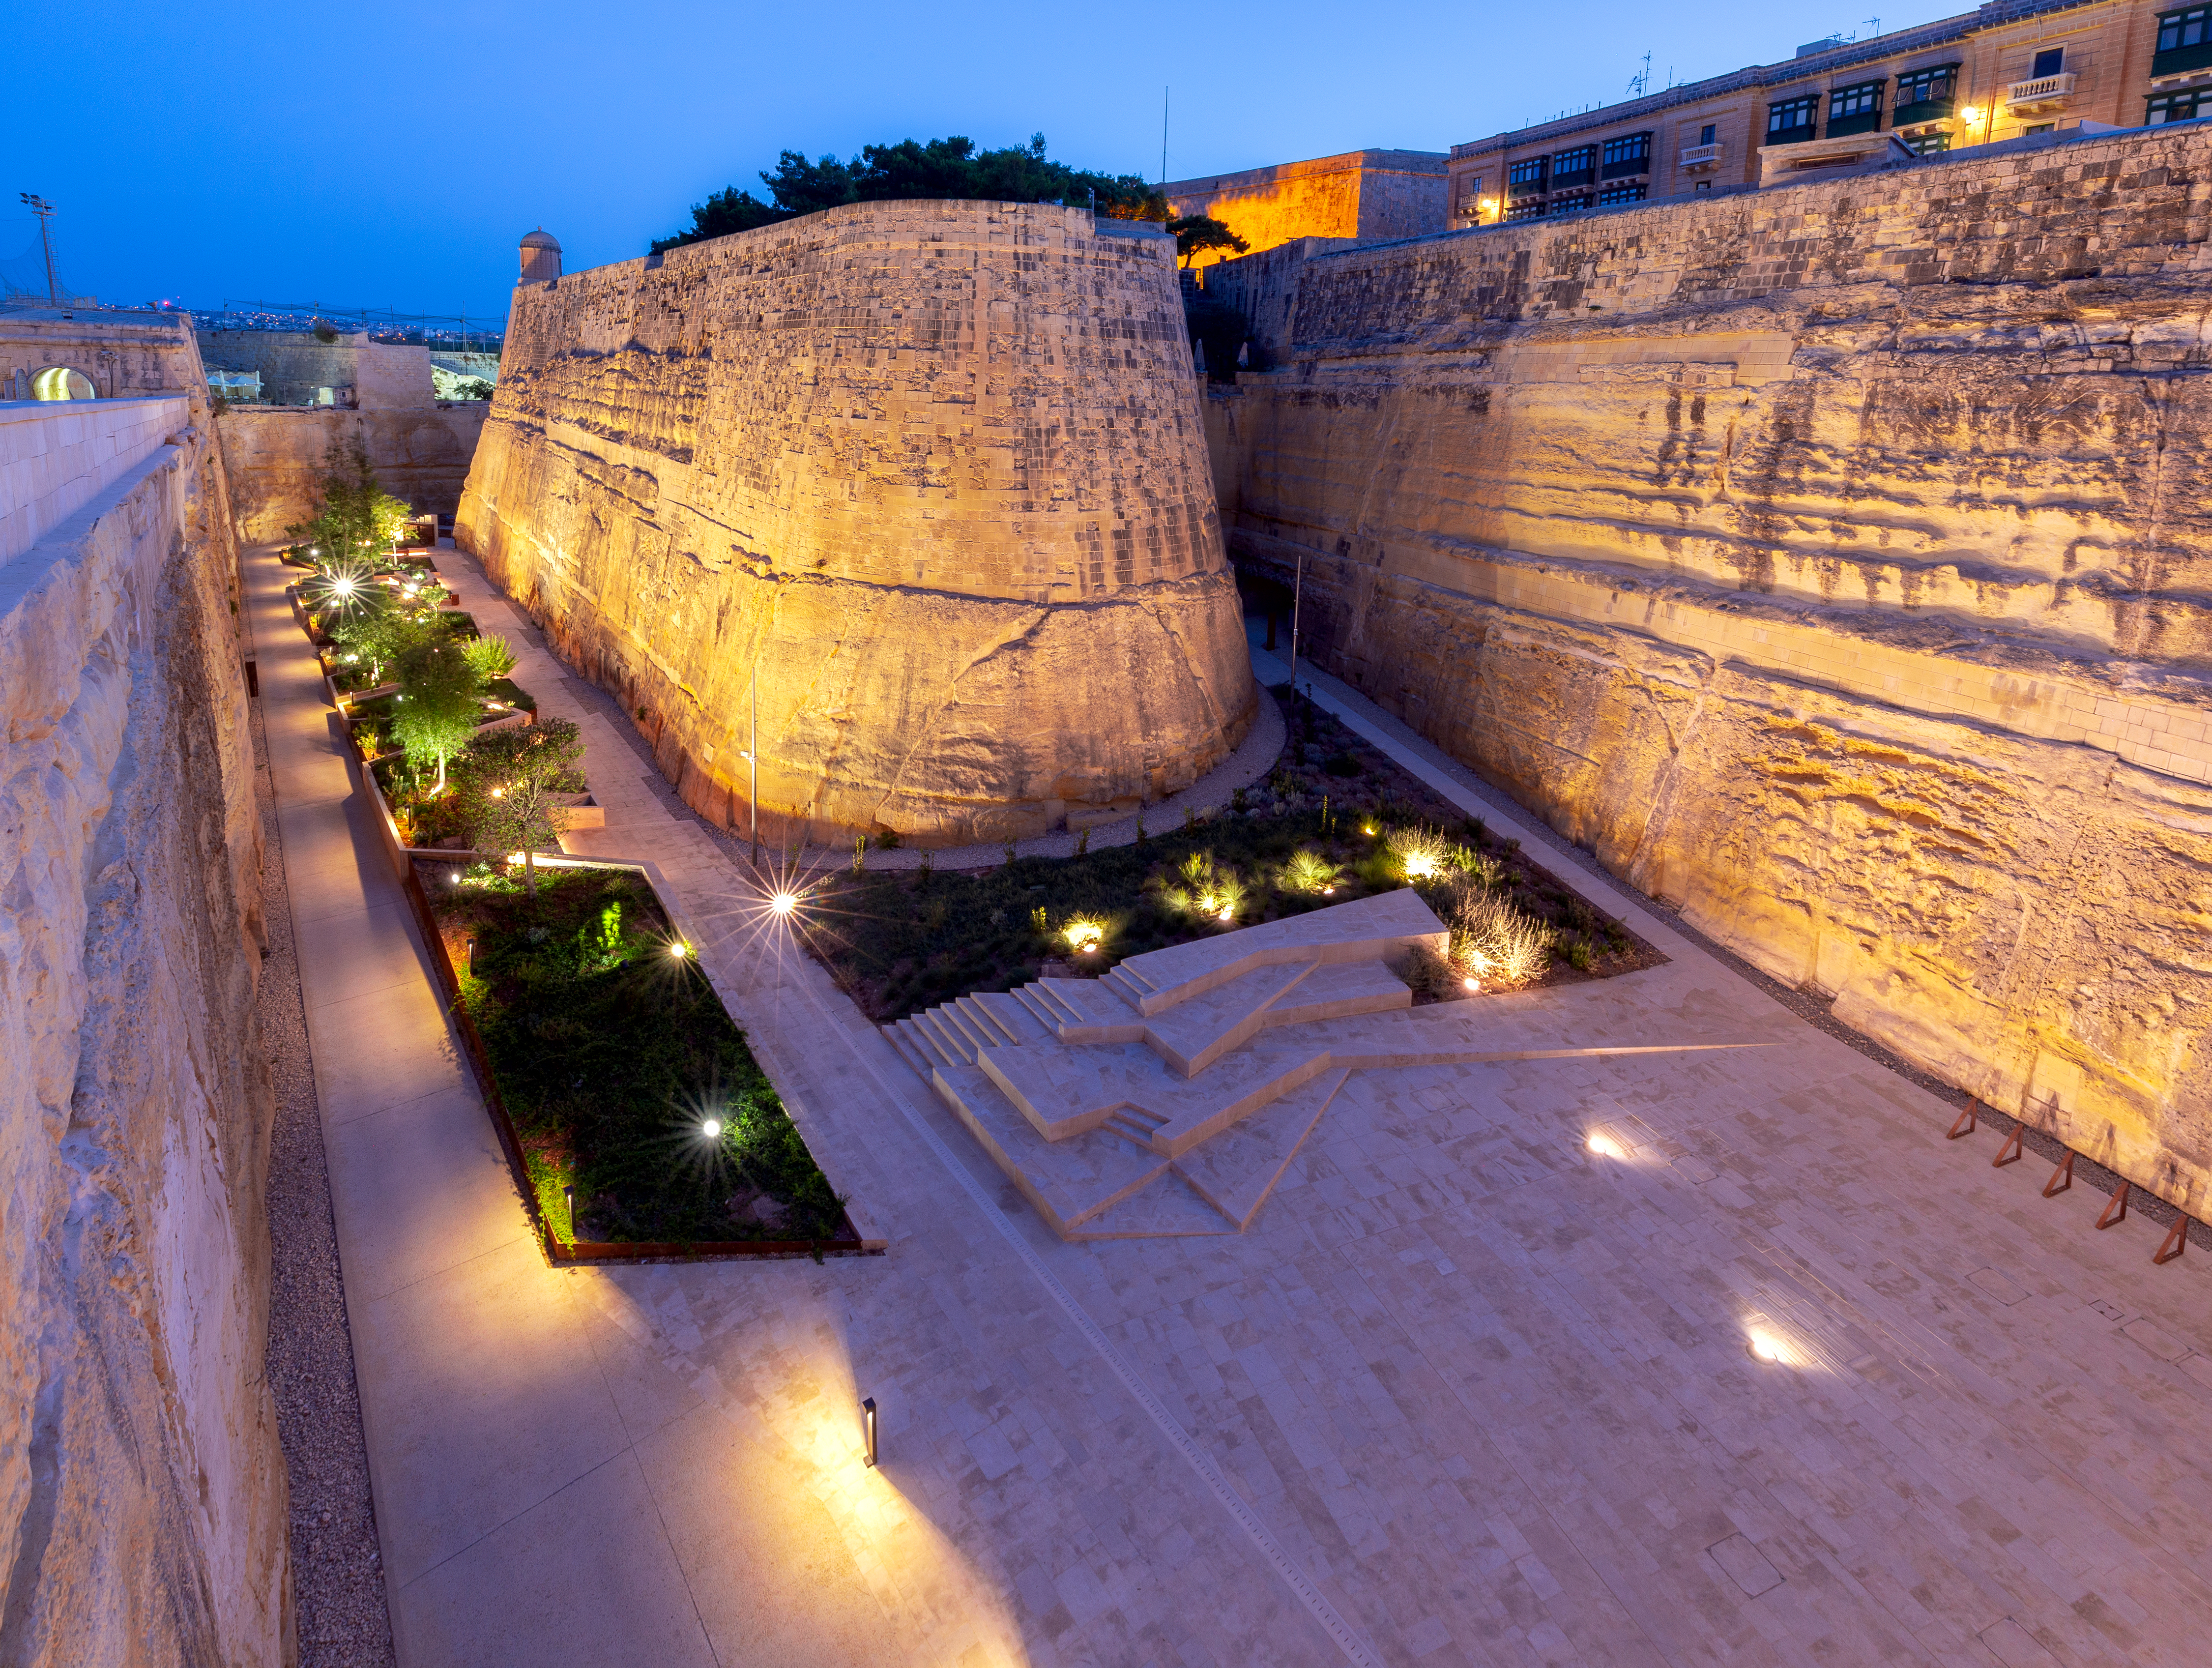 Valletta Ditch Garden - Ġnien Laparelli